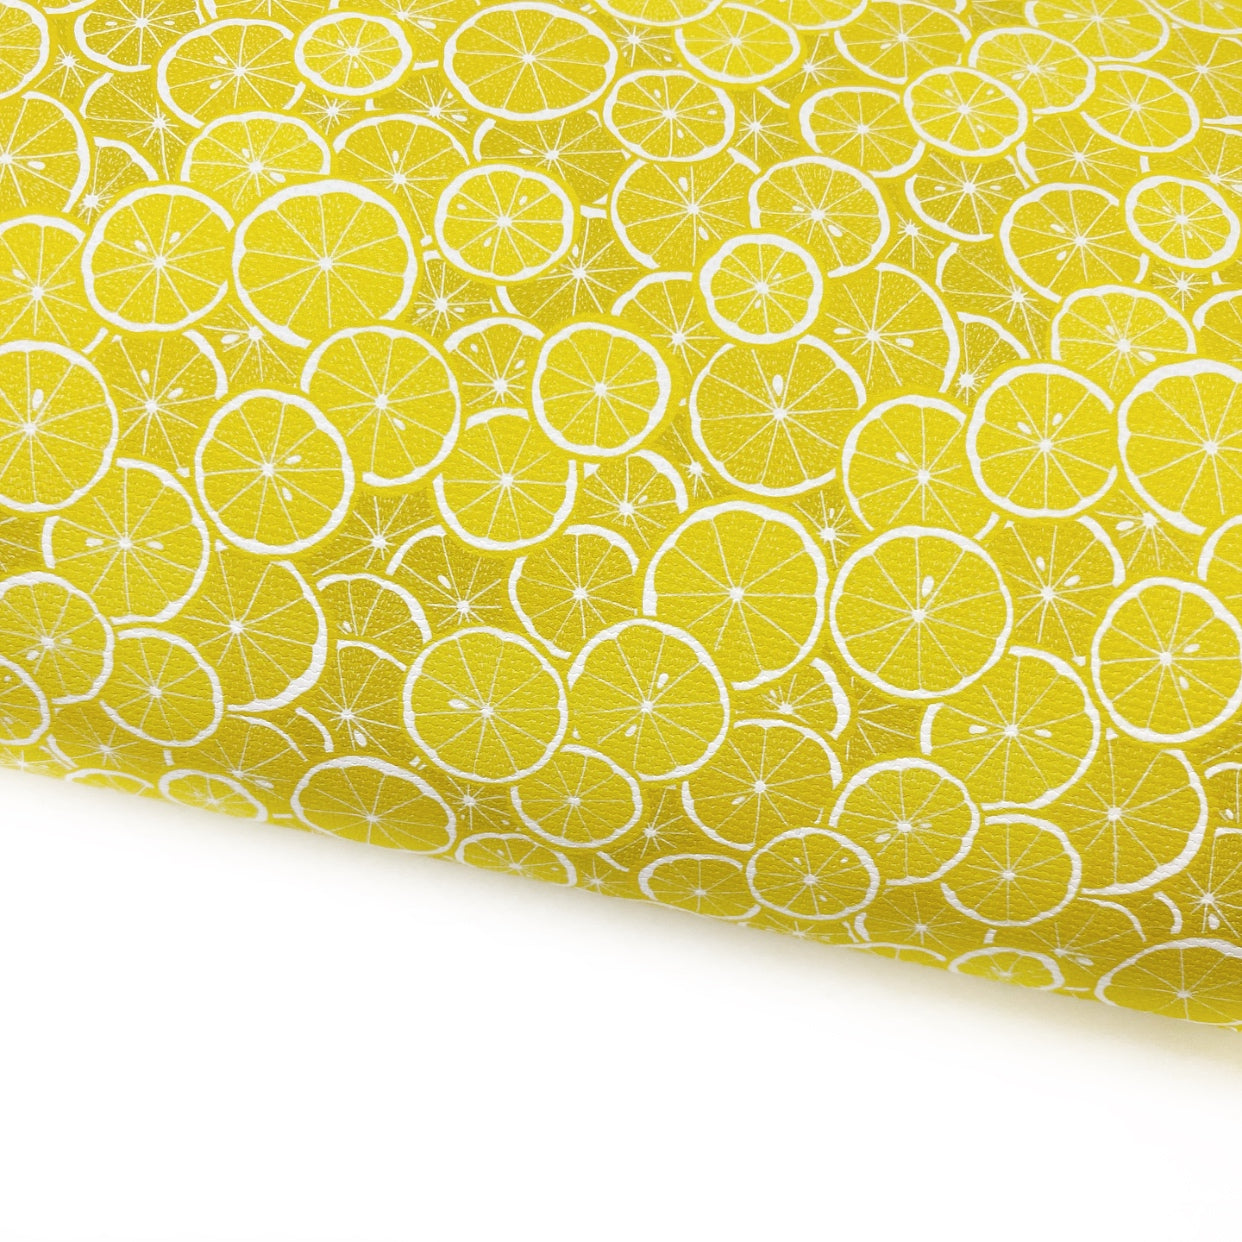 Lemon Slices Lux Premium Printed Bow Fabric